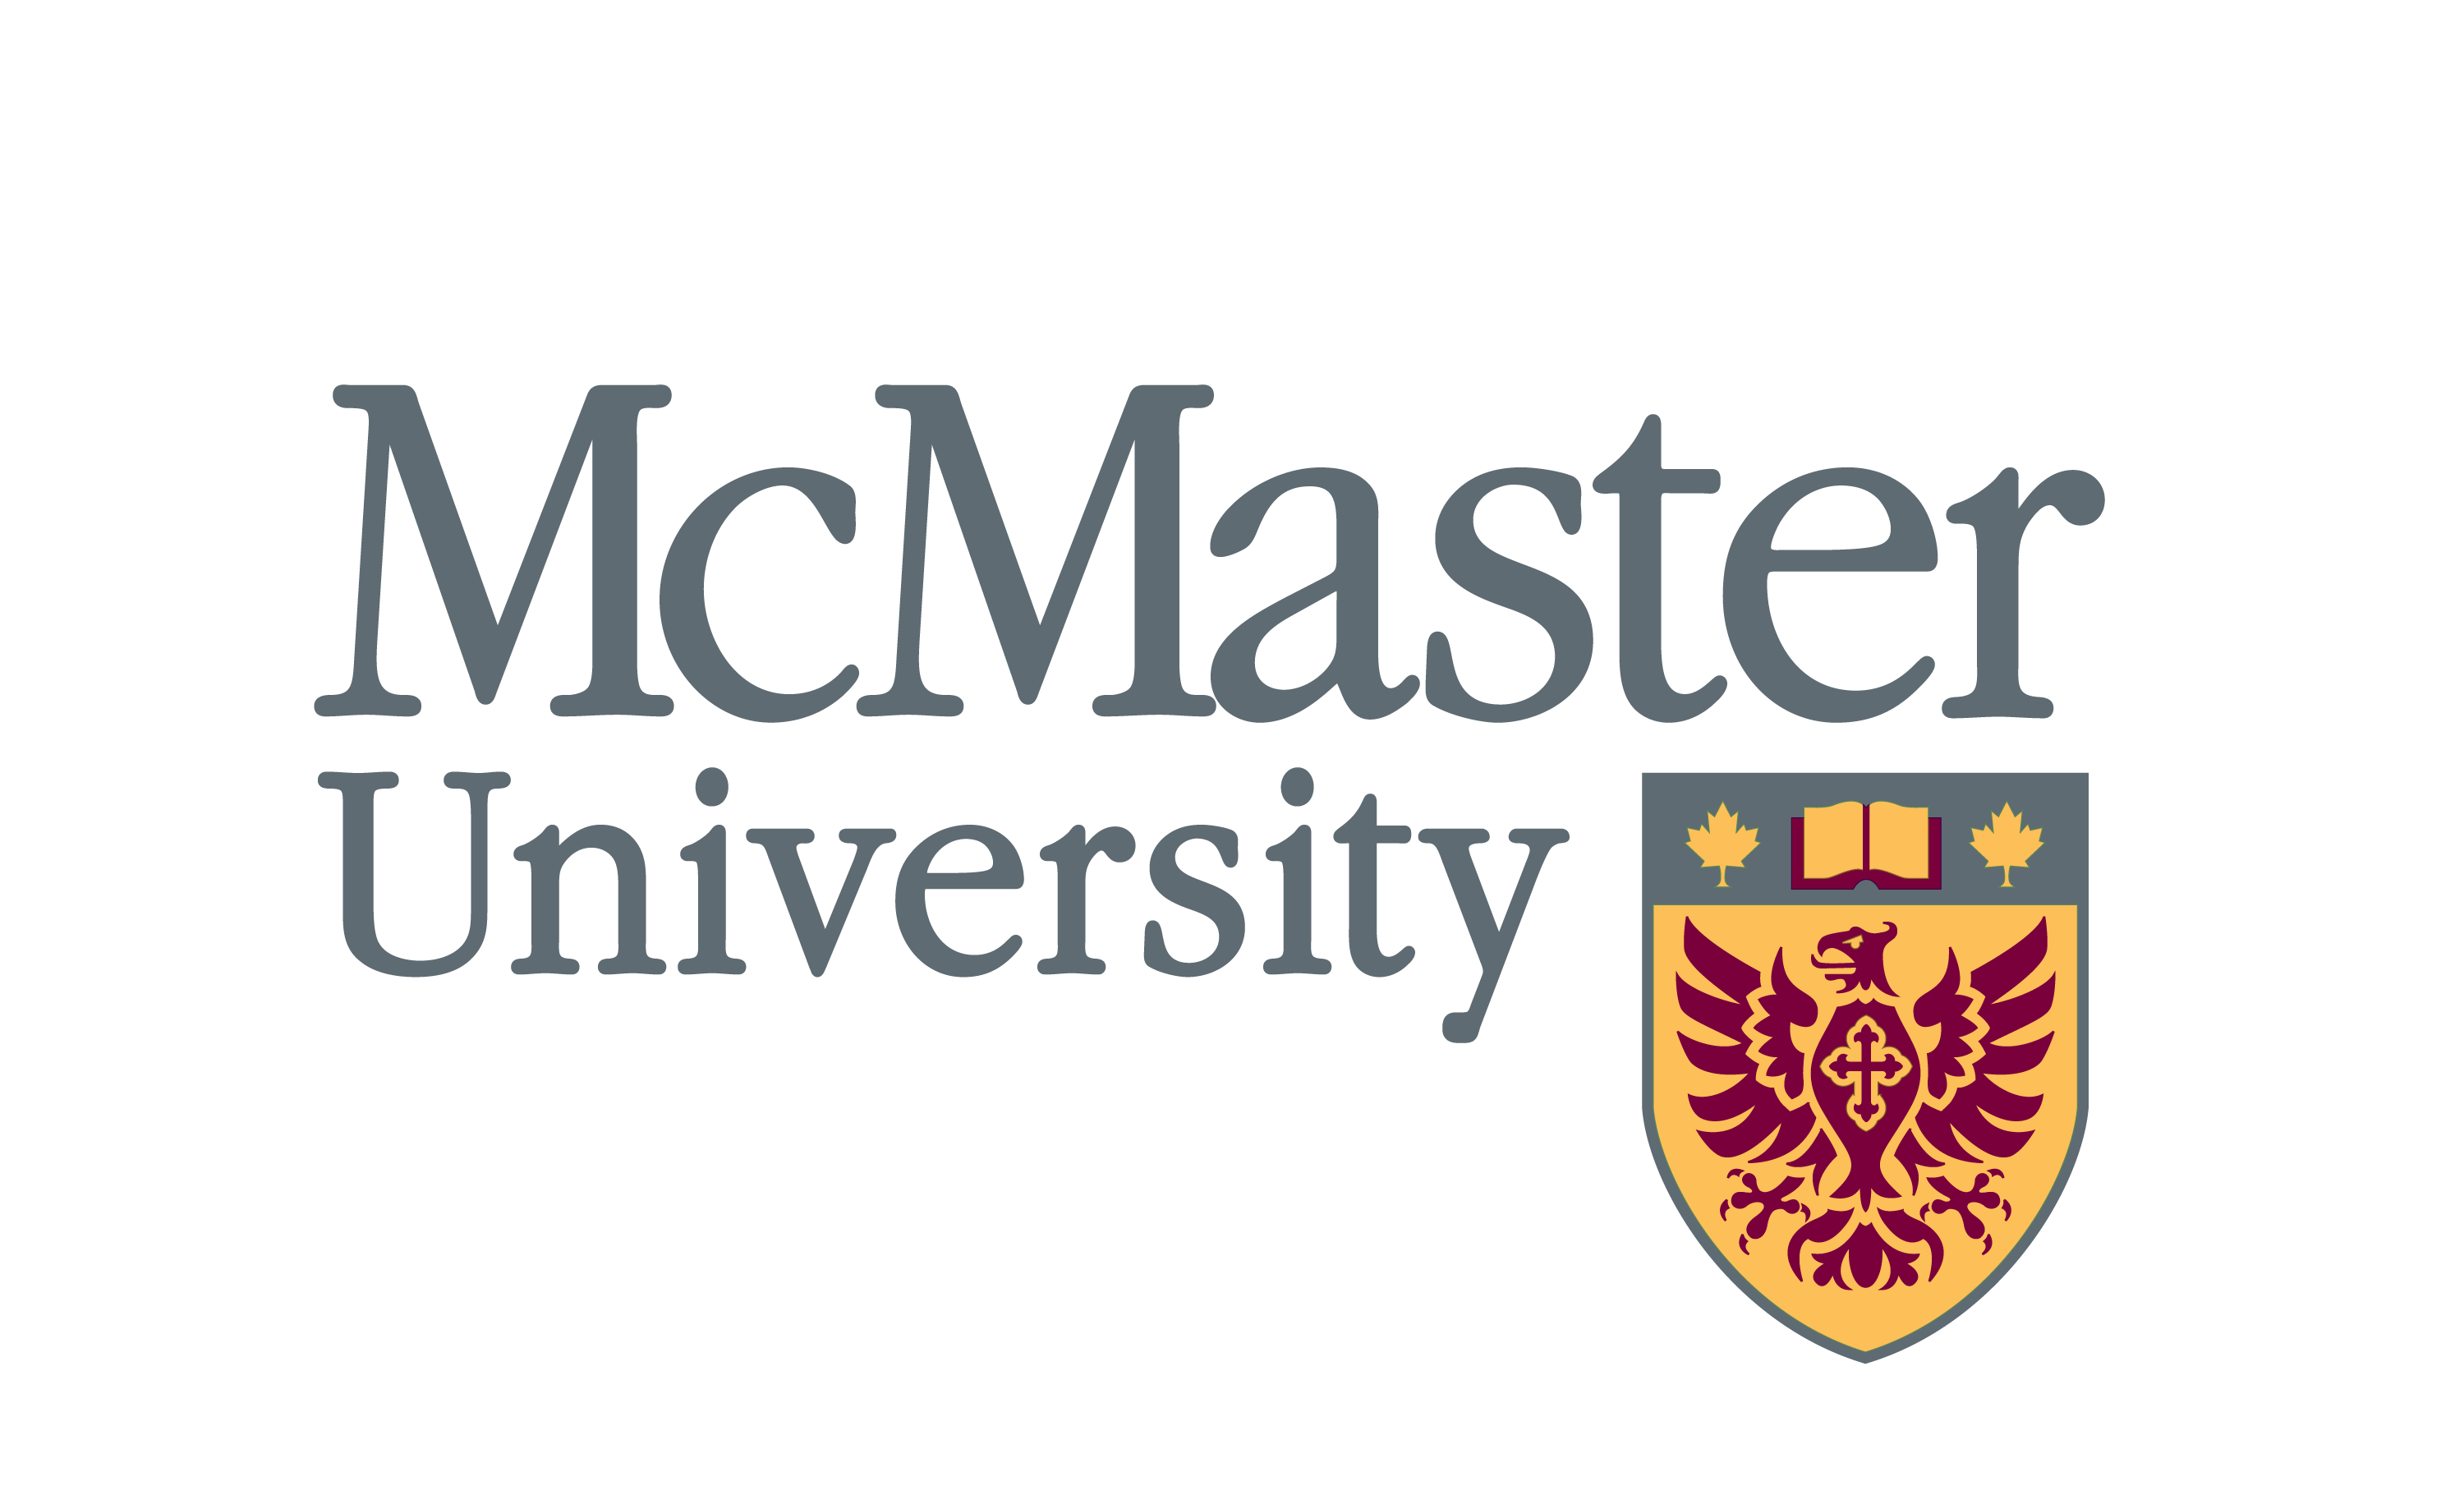 加拿大麦克马斯特大学 logo